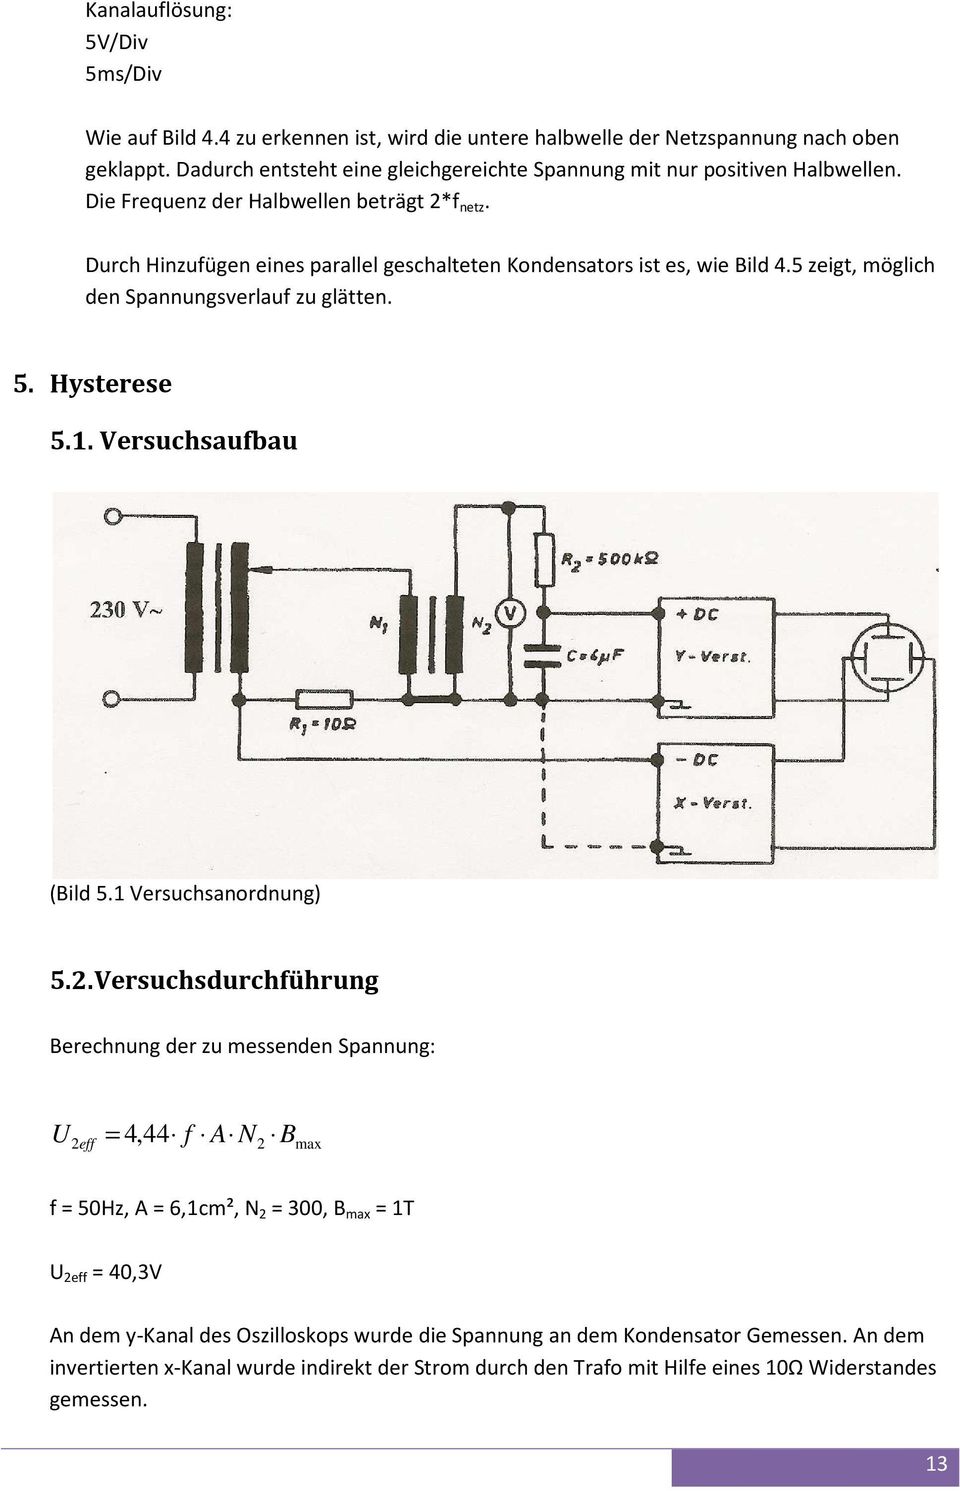 Durch Hinzufügen eines parallel geschalteten Kondensators ist es, wie Bild 4.5 zeigt, möglich den Spannungsverlauf zu glätten. 5. Hysterese 5.1. Versuchsaufbau (Bild 5.1 Versuchsanordnung) 5.2.